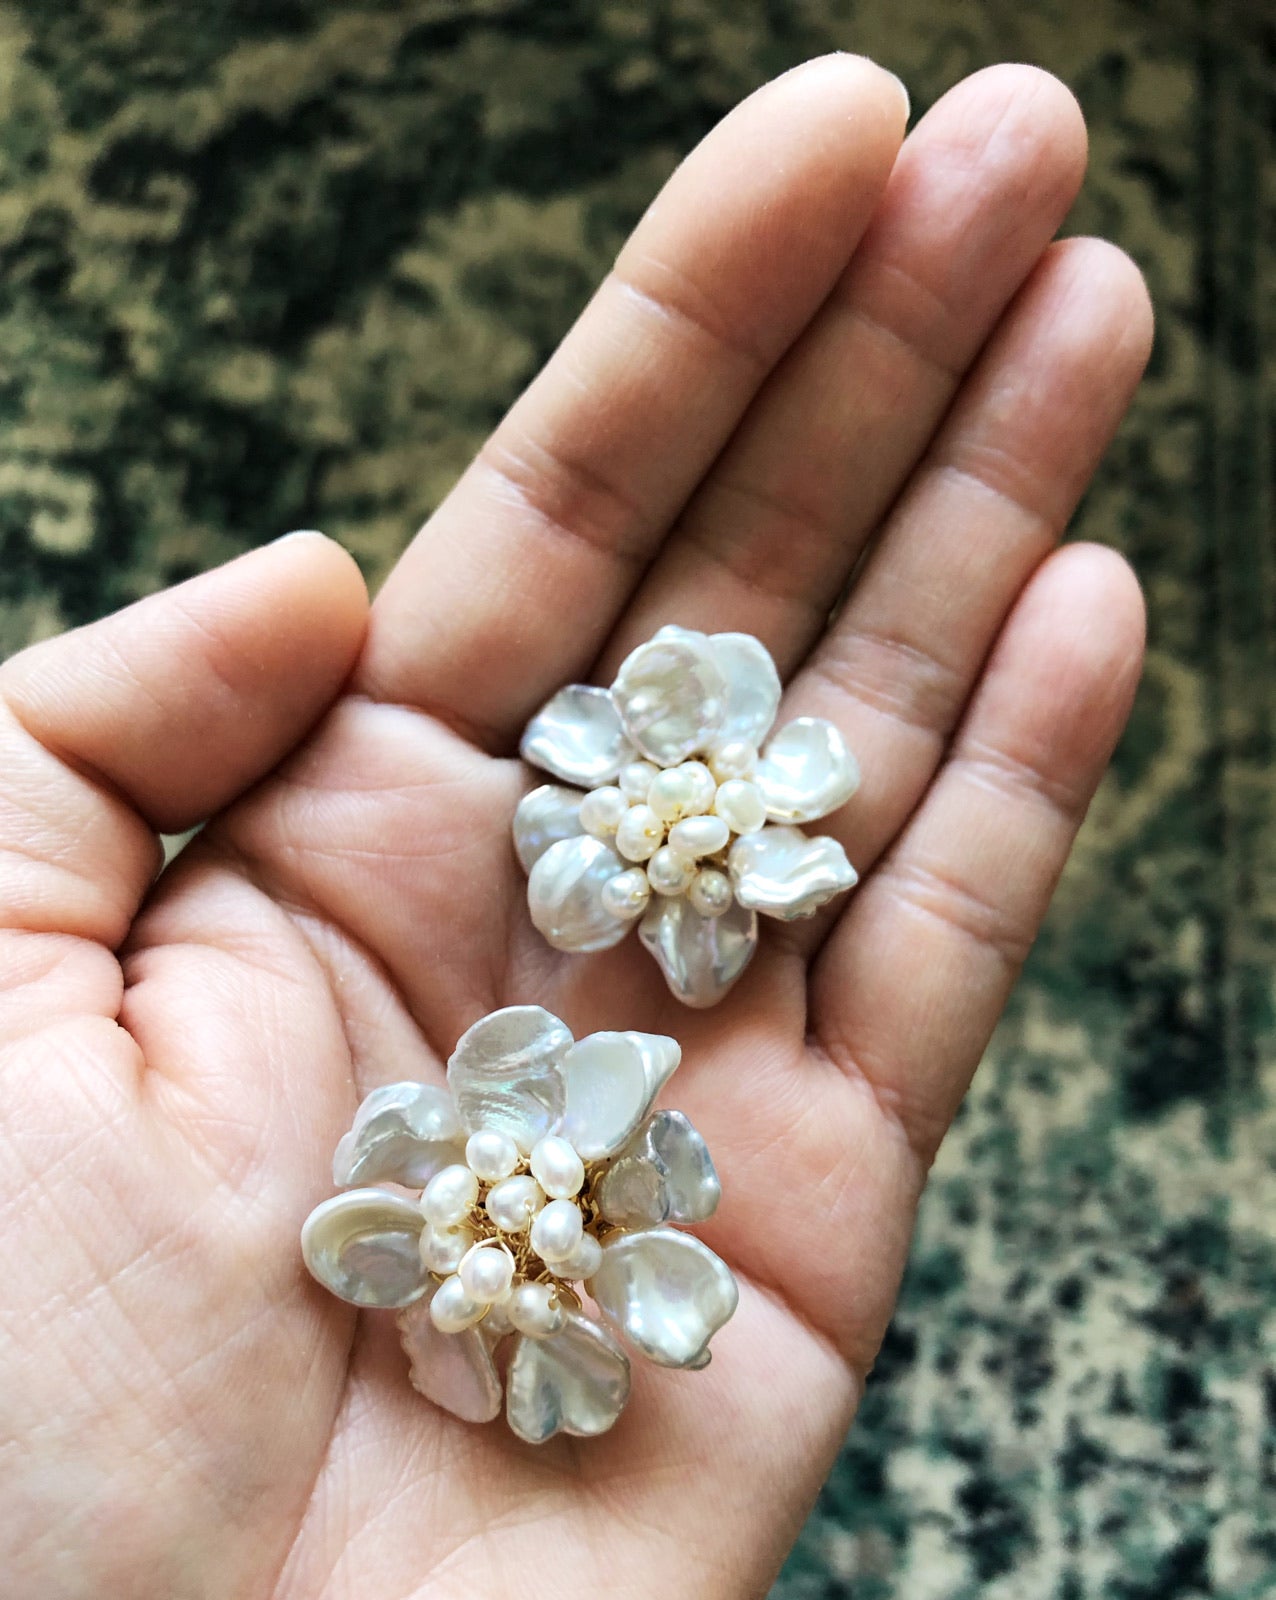 Freshwater baroque pearls floral earrings